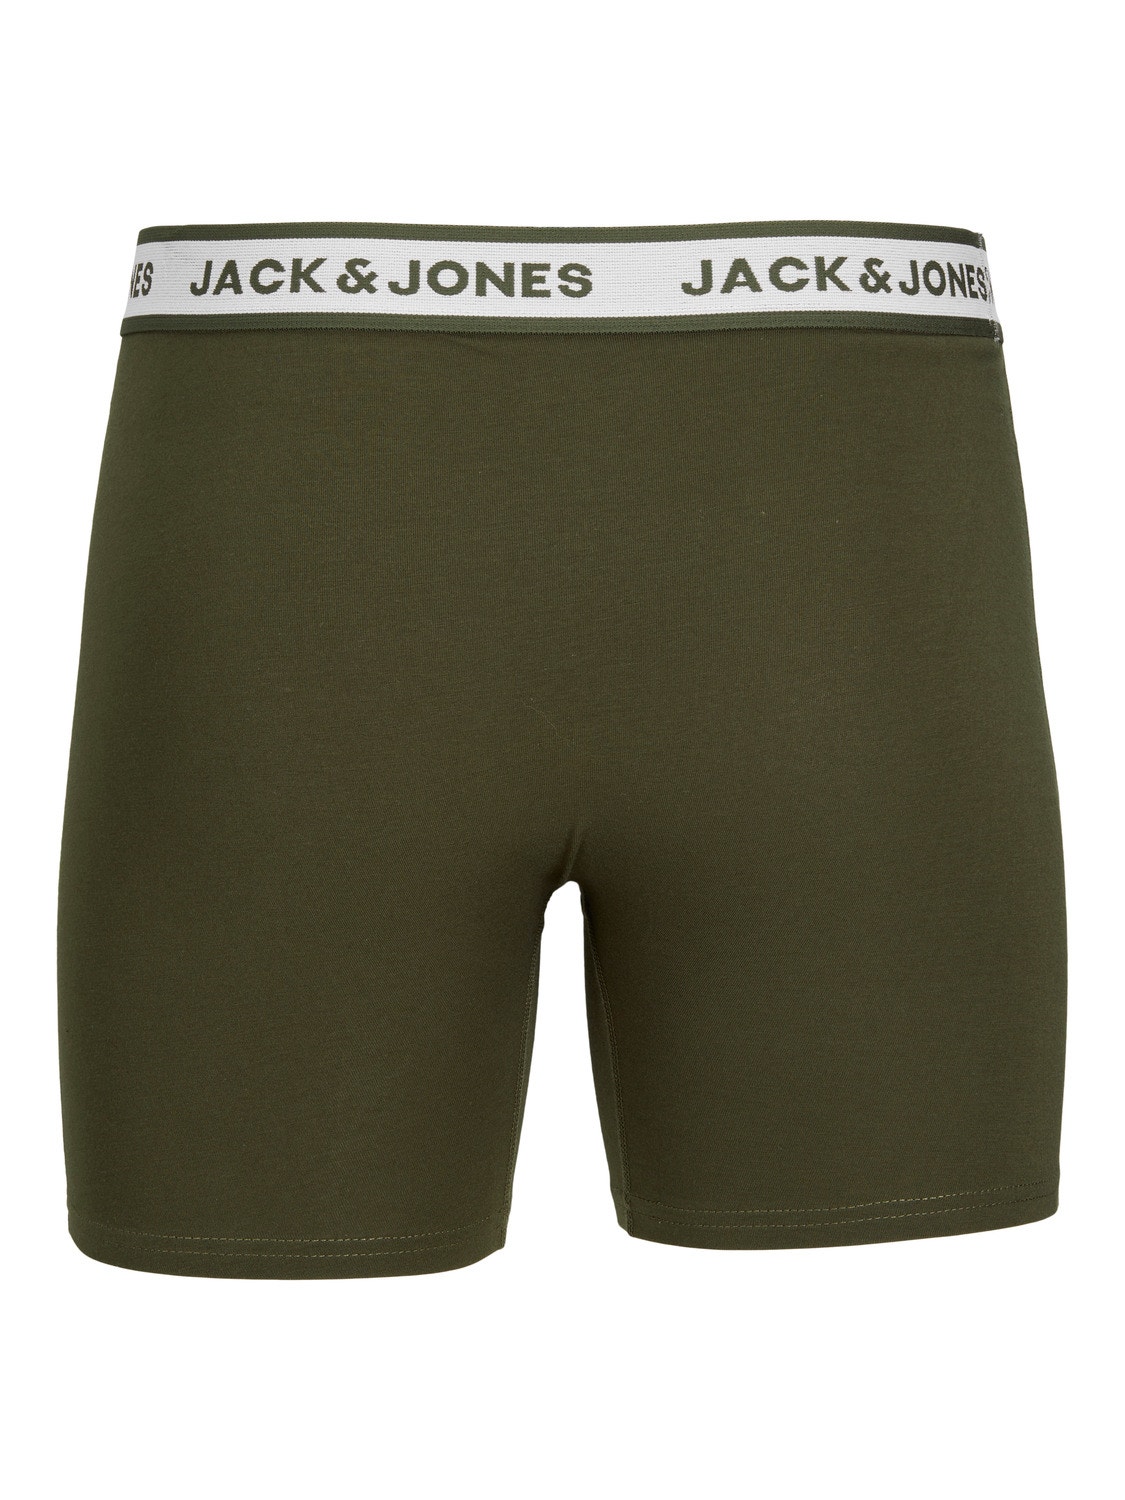 Jack & Jones 5-pak Boxershorts -Light Grey Melange - 12229569